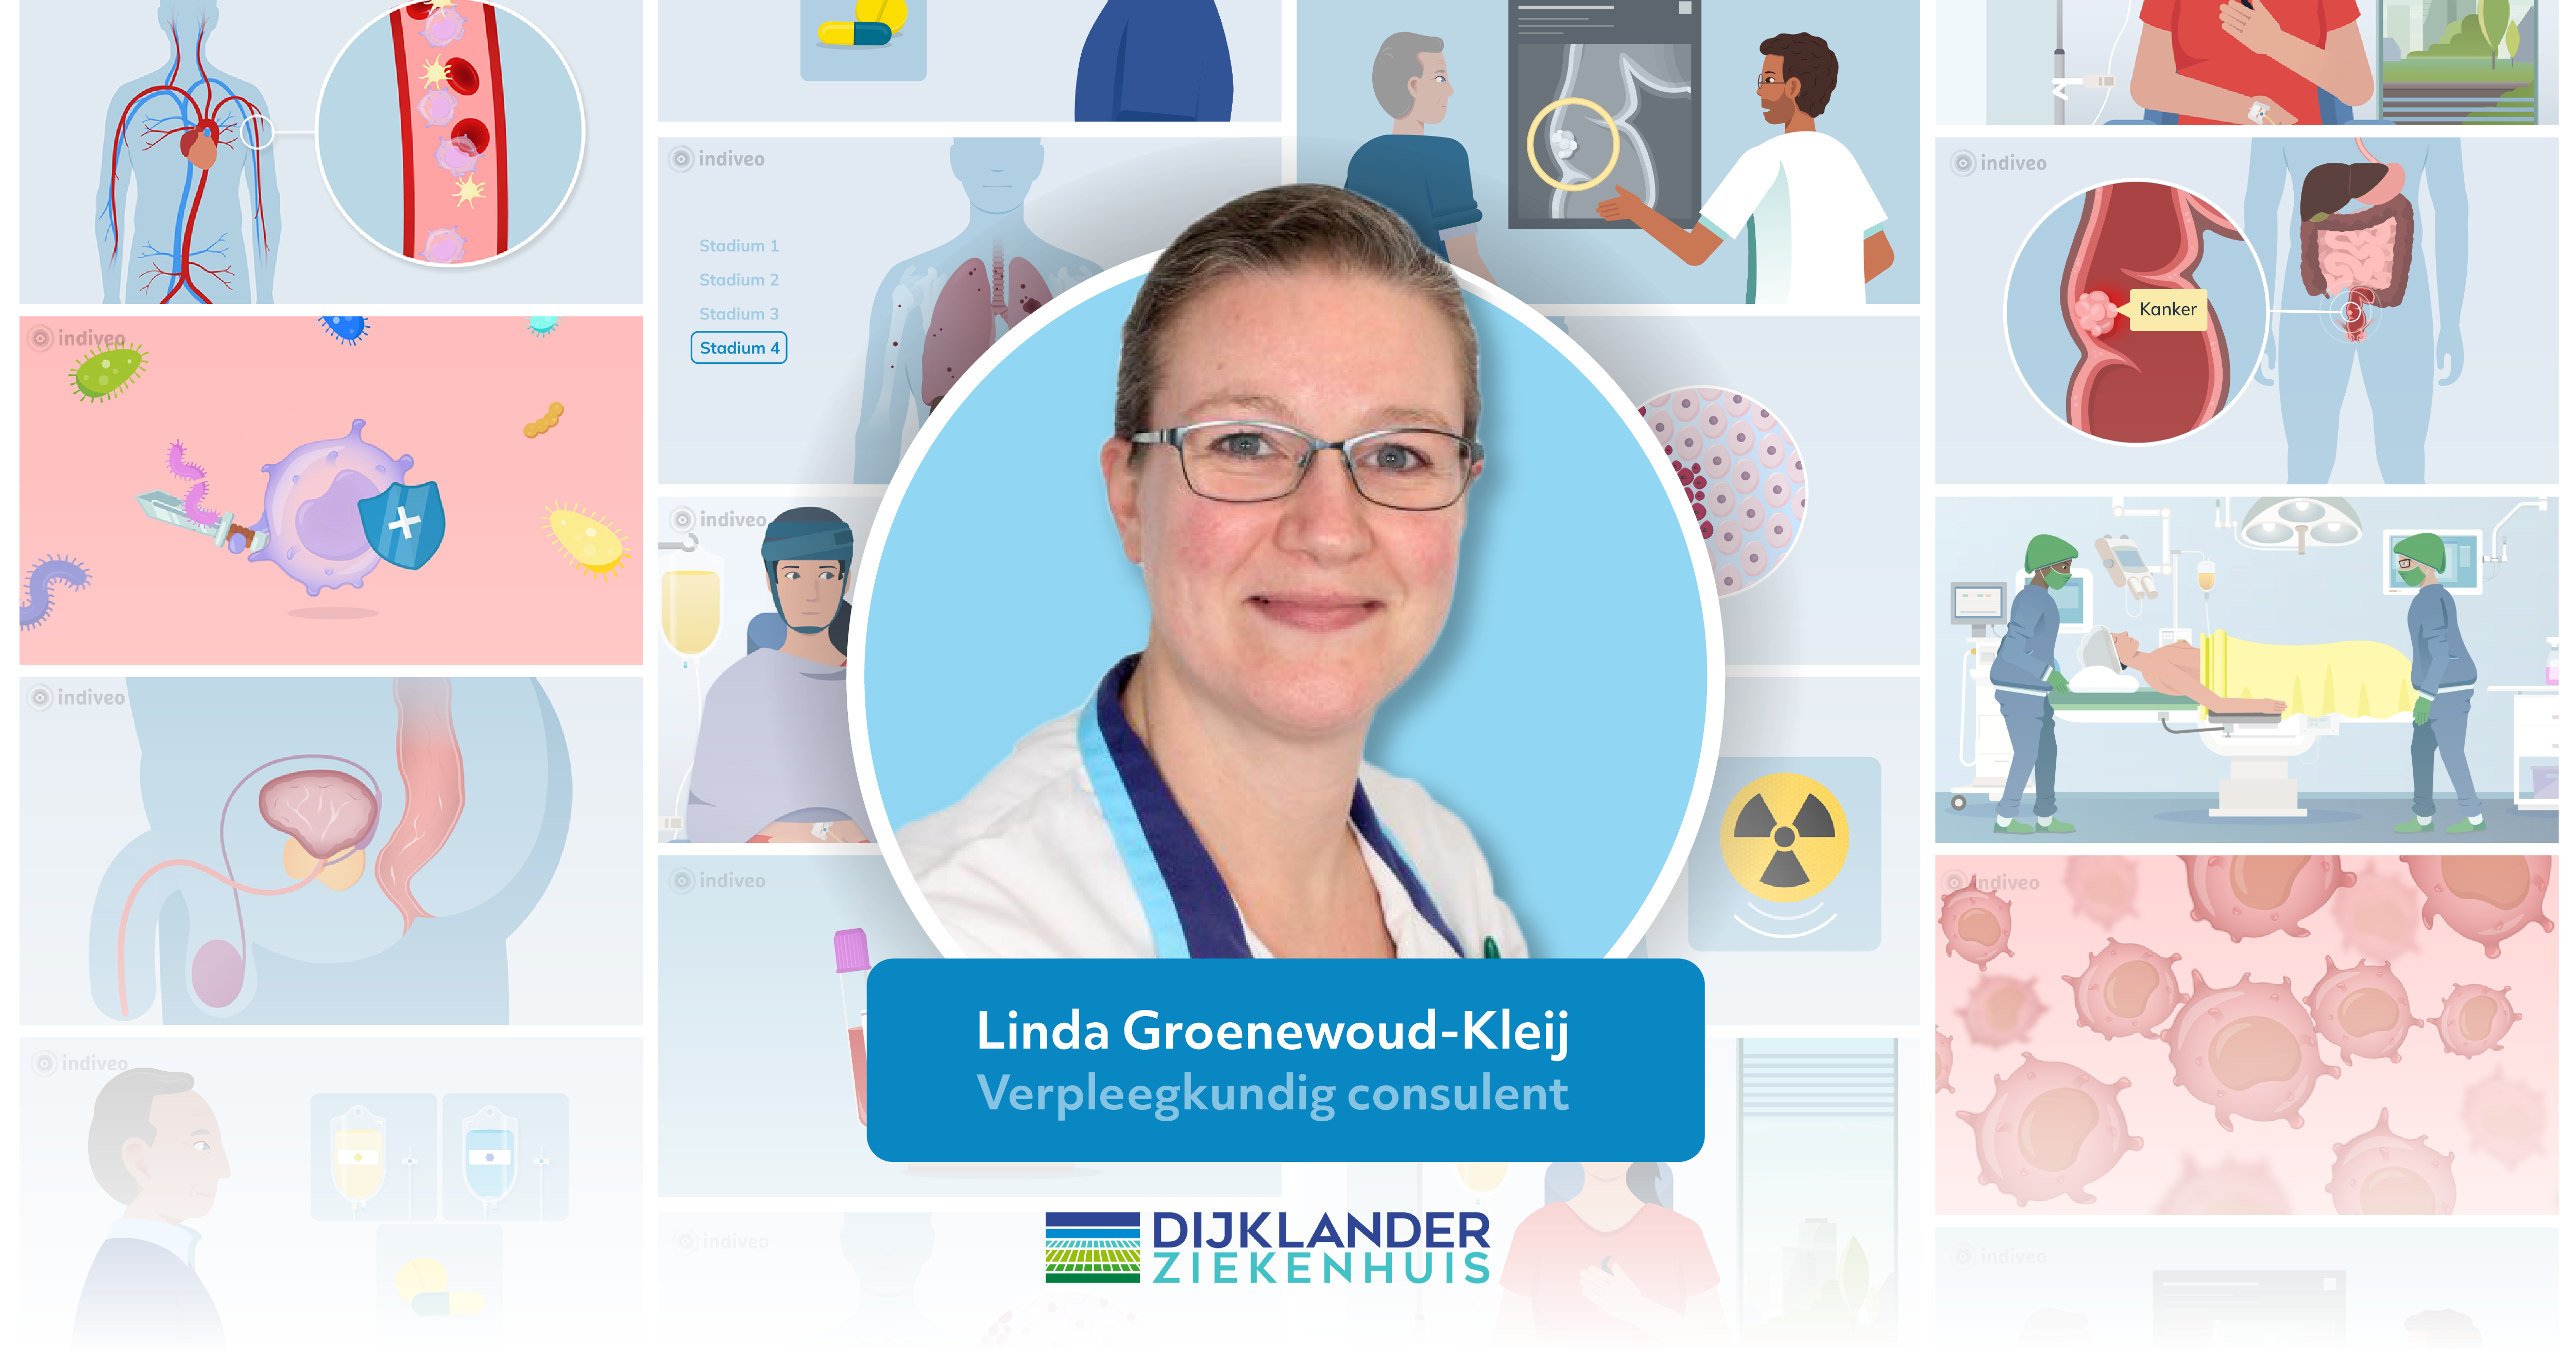 Linda Groenewoud-Kleij, verpleegkundig consulent, naar haar en haar ervaringen met Indiveo